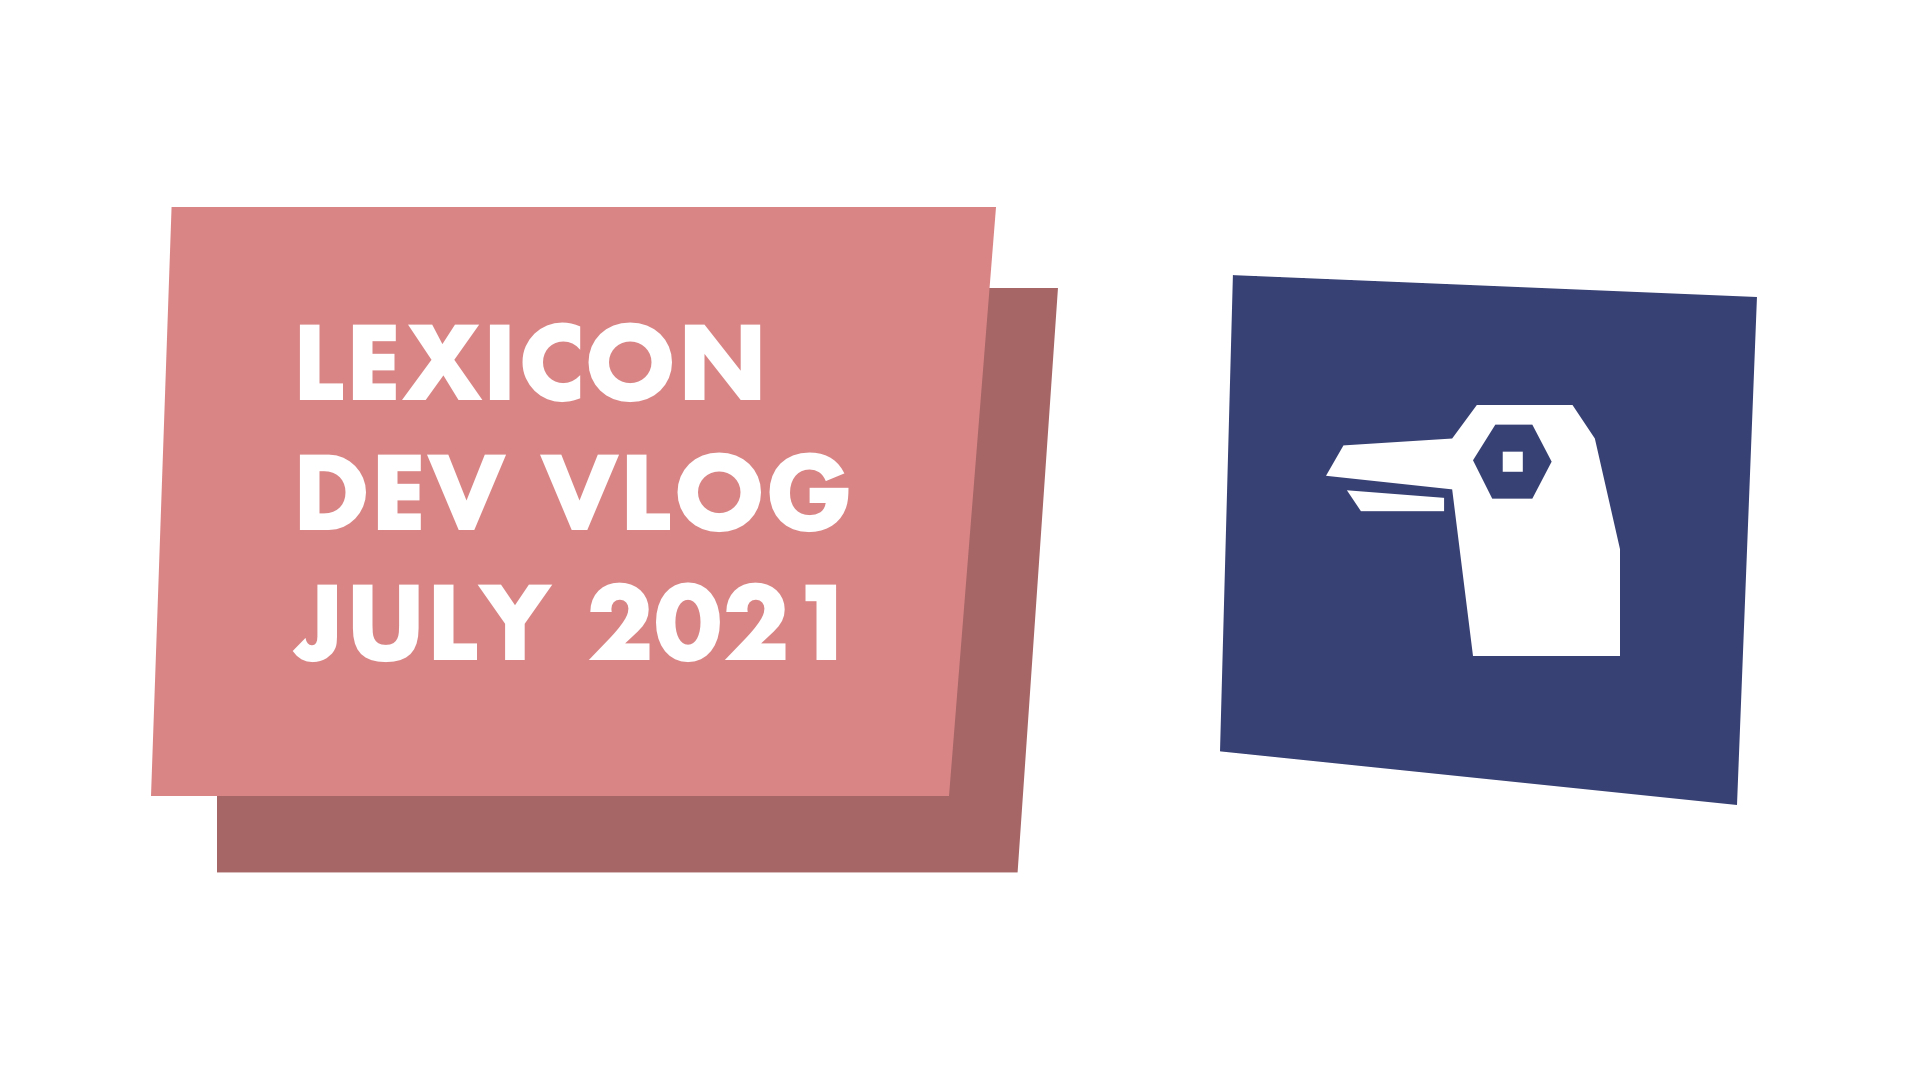 Lexicon Dev Vlog July 2021